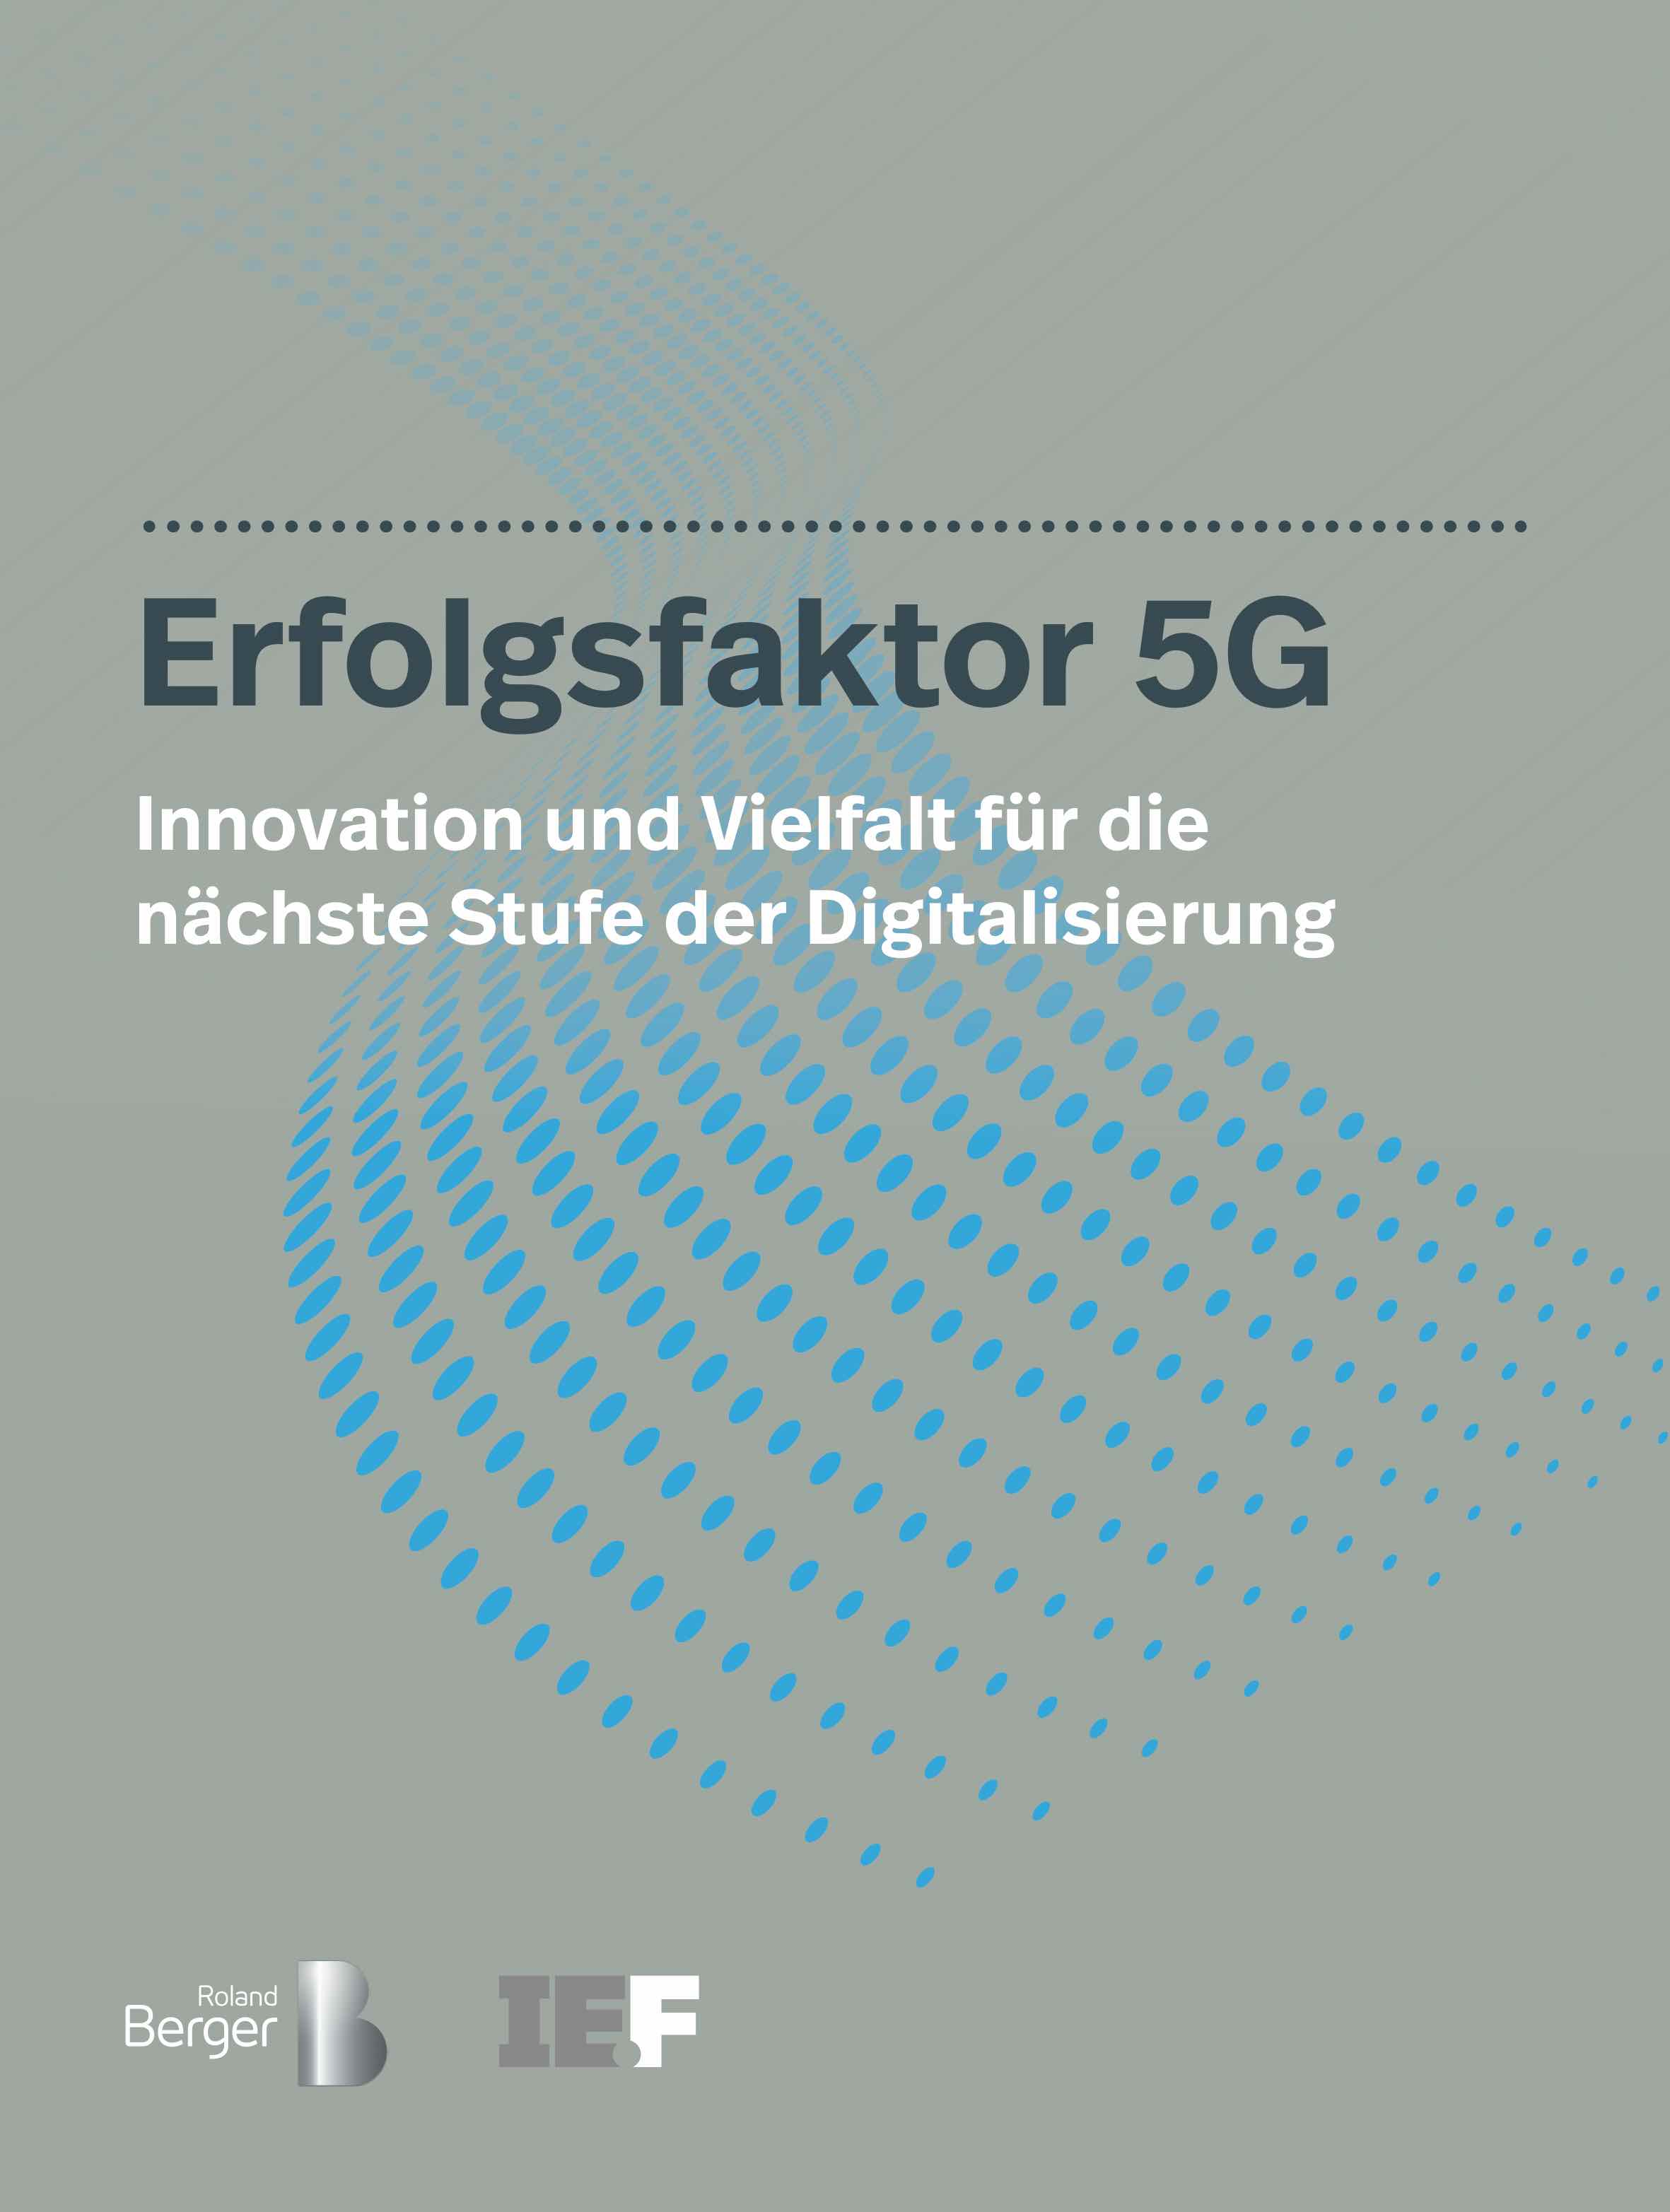 Erfolgsfaktor 5G: Neue Studie der IE.F und Roland Berger